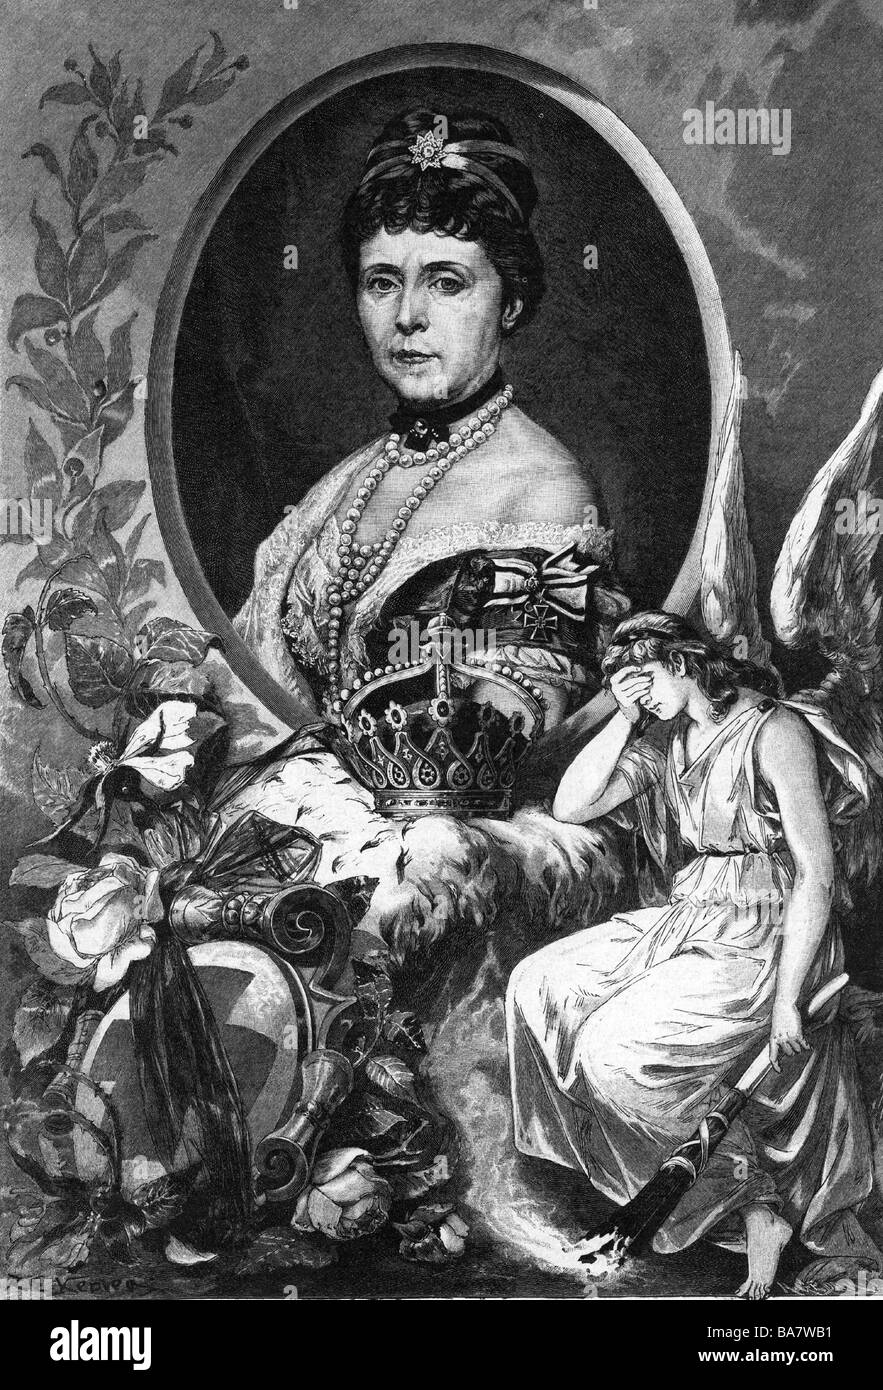 Augusta Marie, 30.9.1811 - 7.1.1890, Imperatrice tedesca 18.1.1871 - 9.3.1888, ritratto in cornice allegorica, incisione in legno, pubblicato dopo la sua morte, Foto Stock